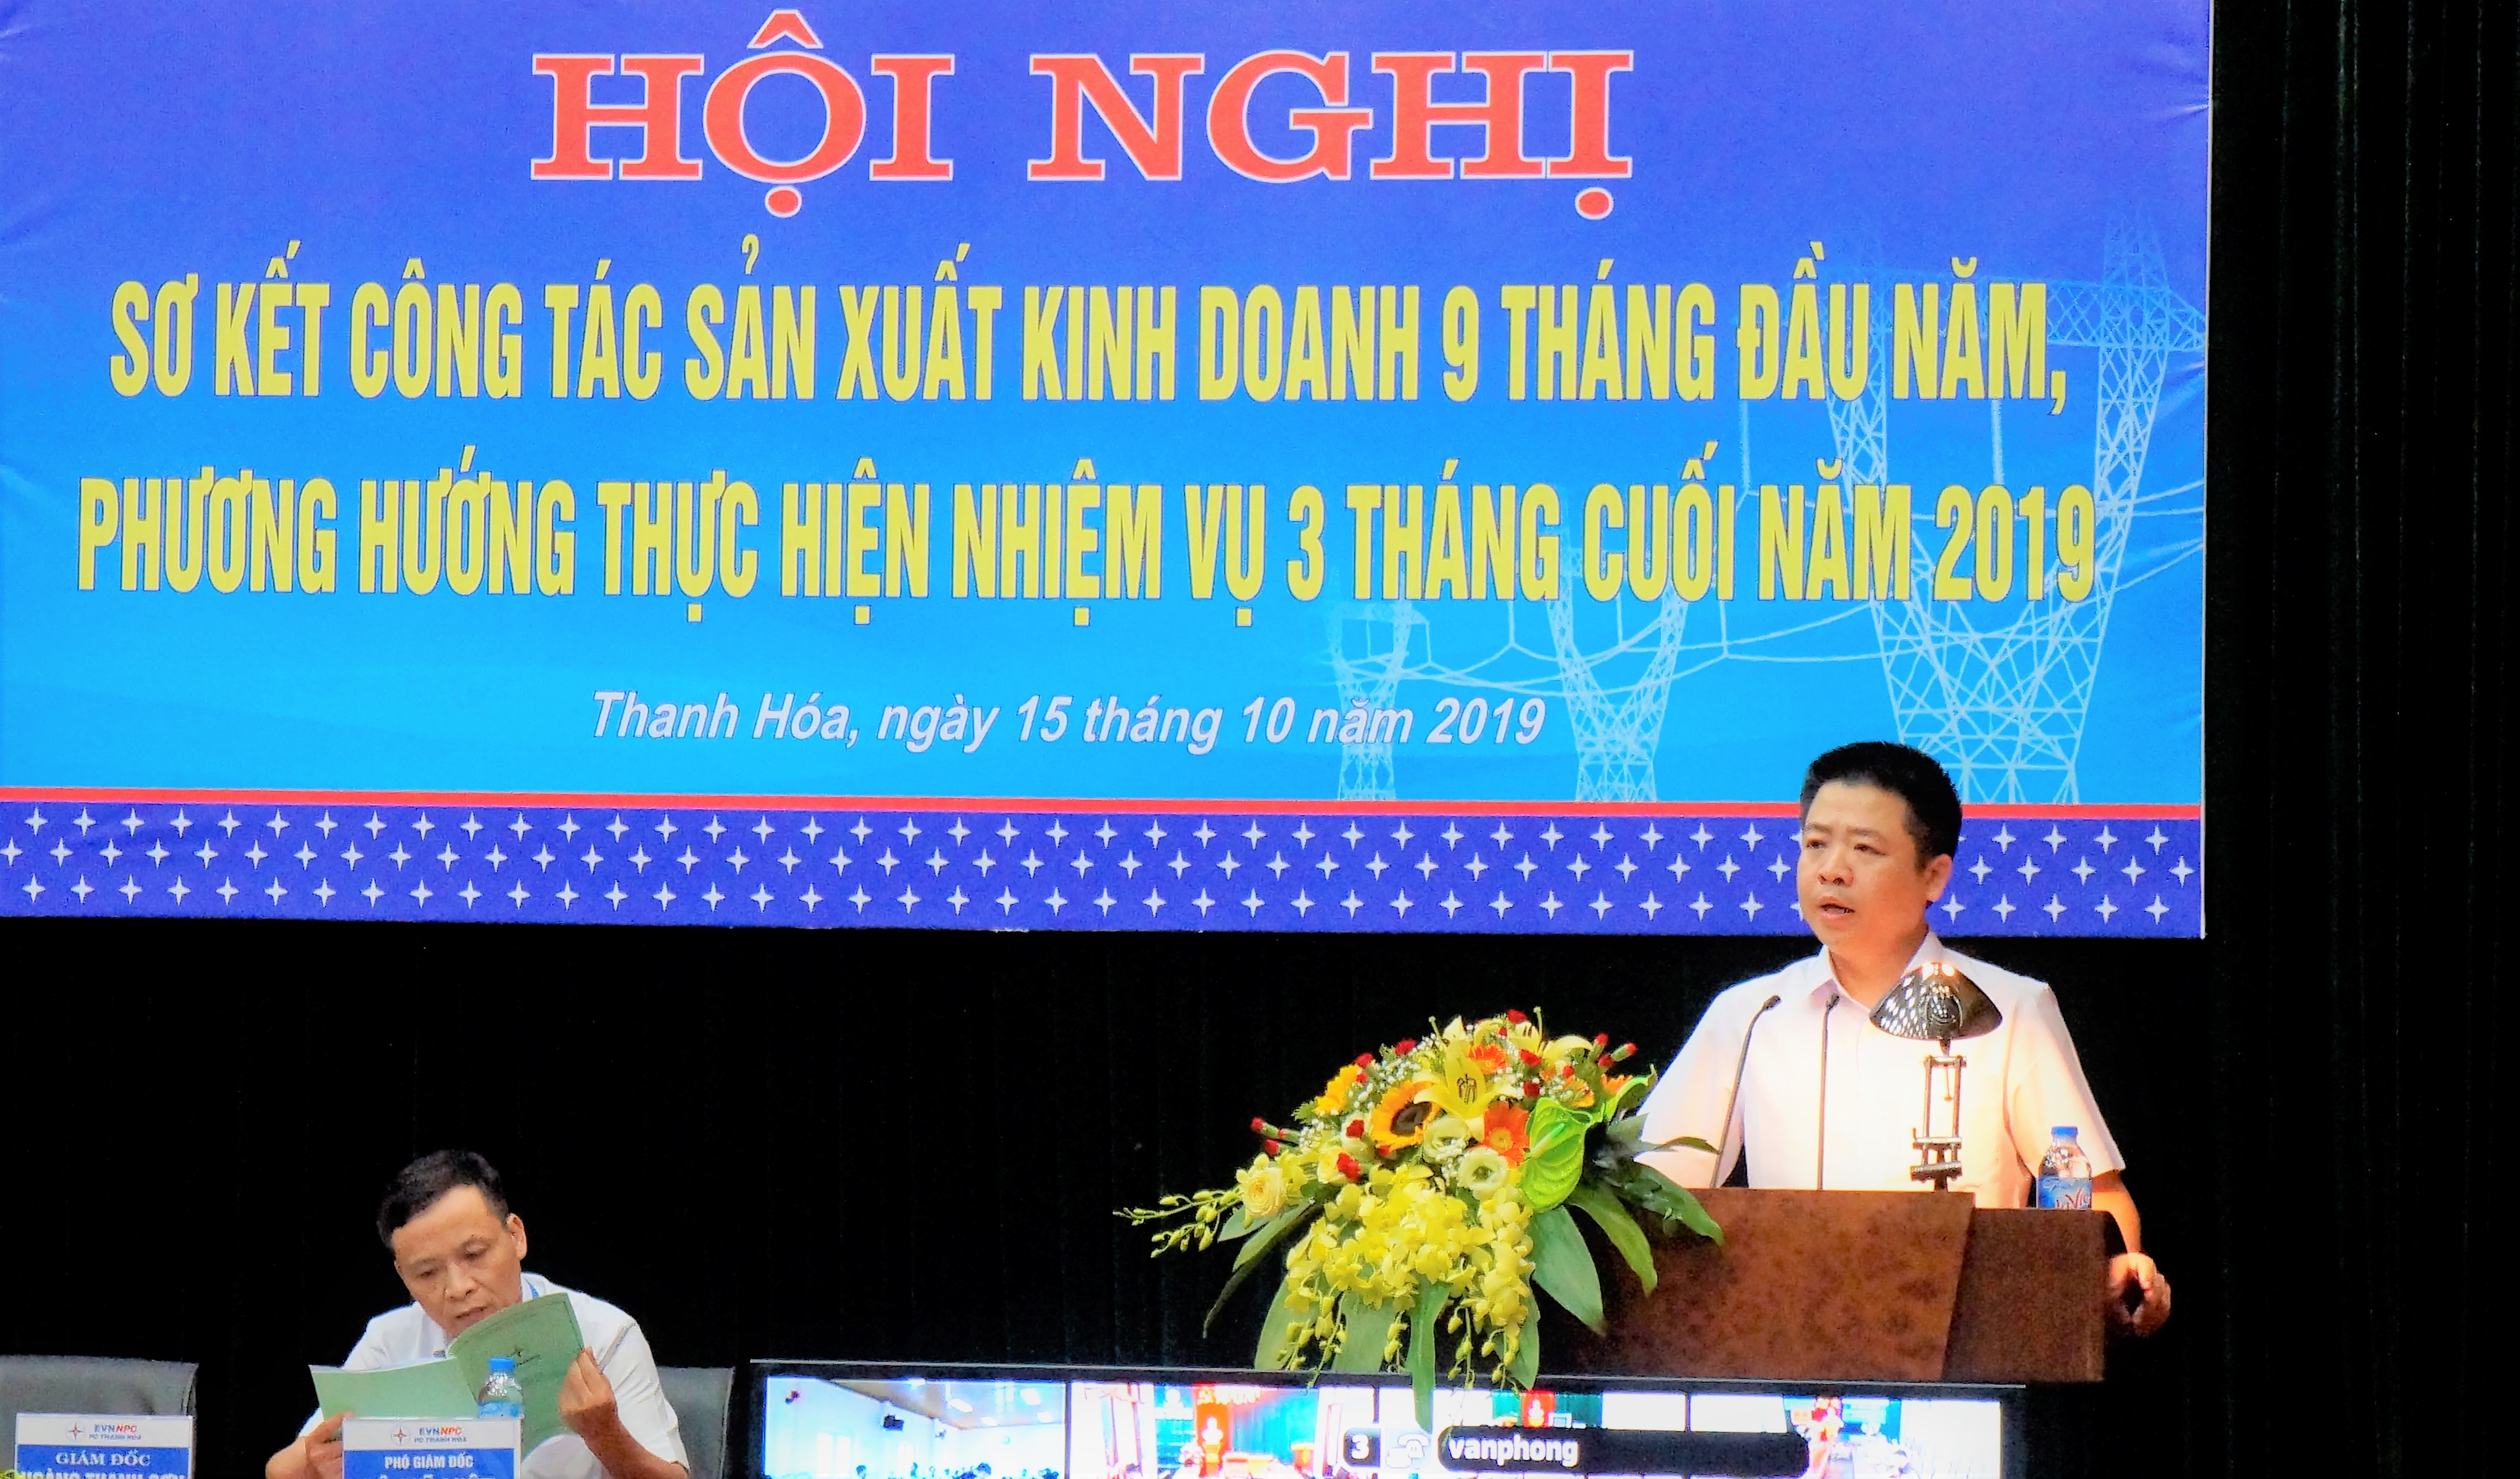 PC Thanh Hóa: 9 tháng, điện thương phẩm tăng trưởng 10,77%